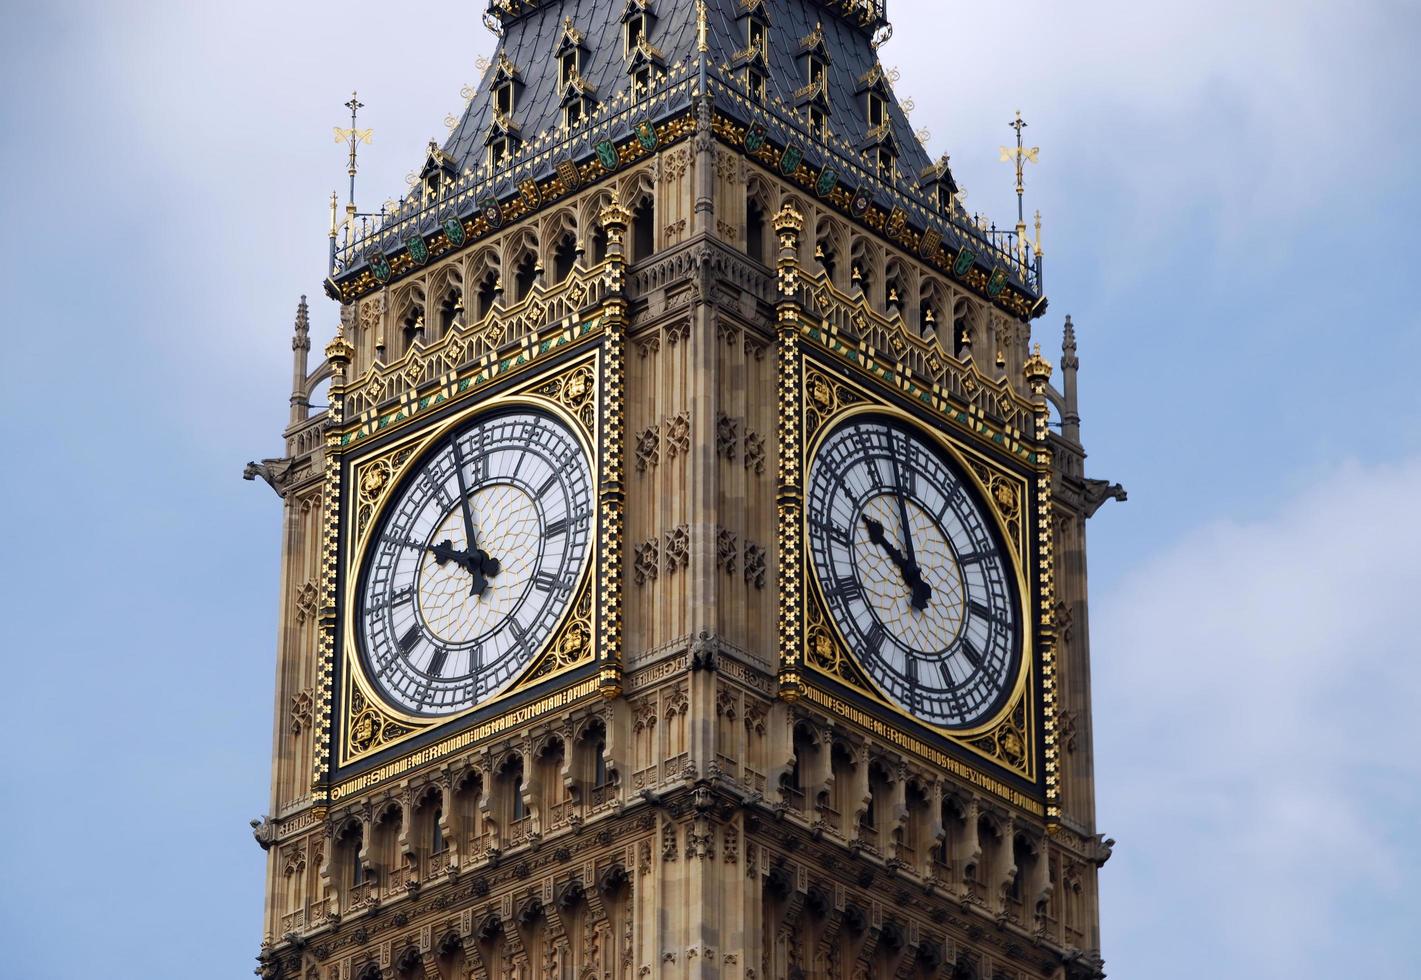 berömda big ben, även känd som elizabeth tower, klocktorn vid palatset i westminster i london, Storbritannien, Storbritannien. landmärke i london. foto